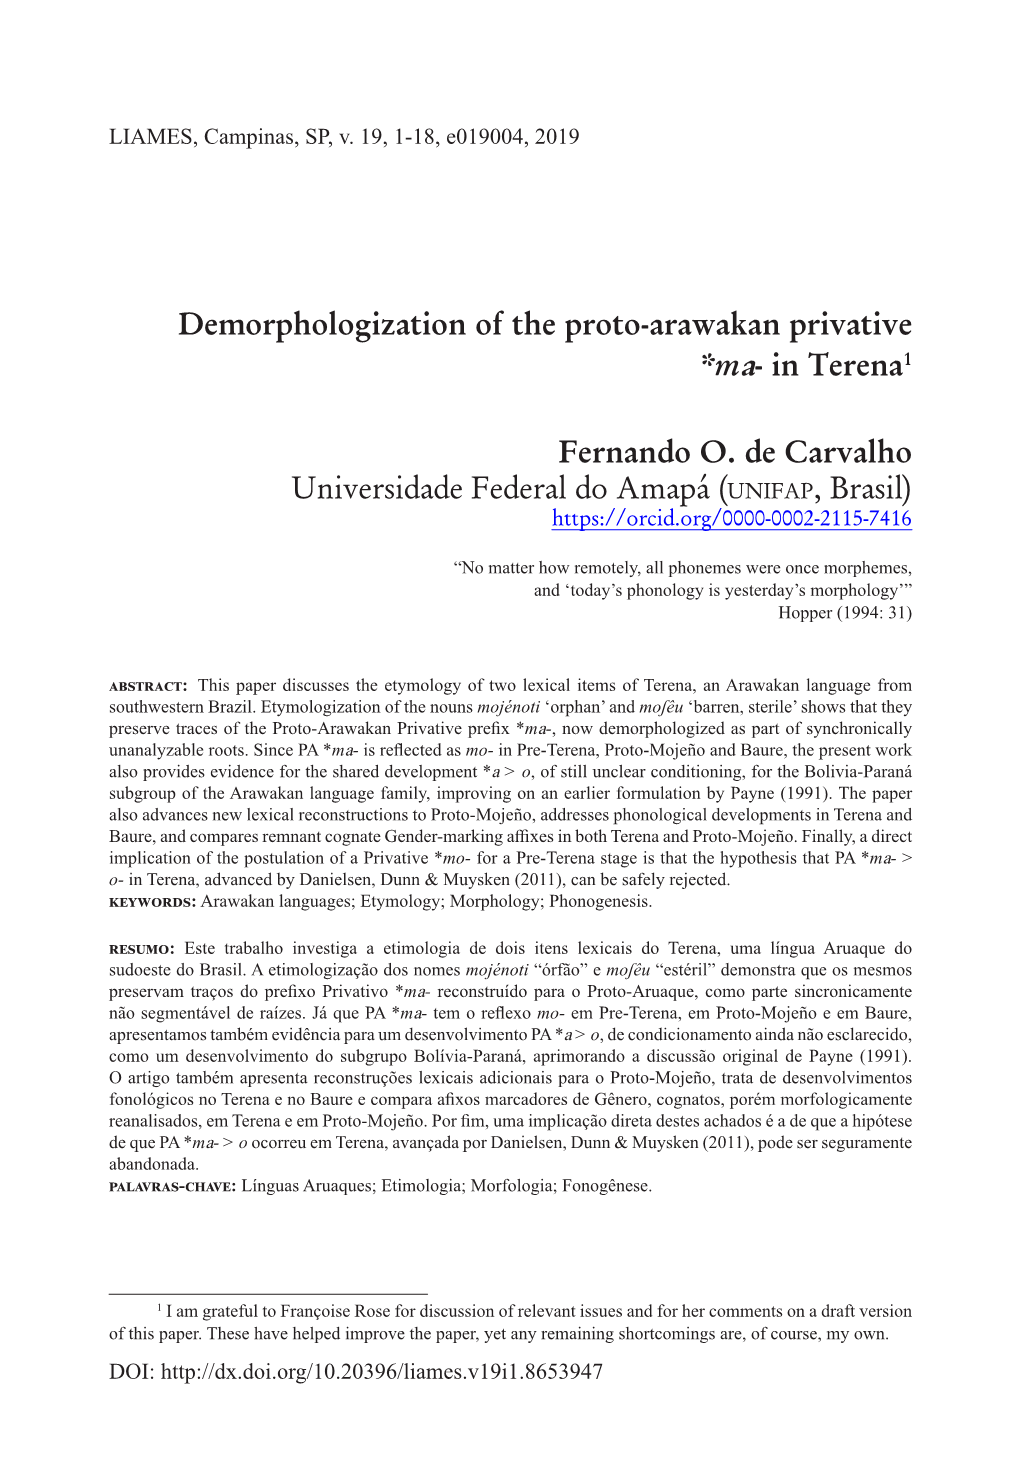 Demorphologization of the Proto-Arawakan Privative *Ma- in Terena1